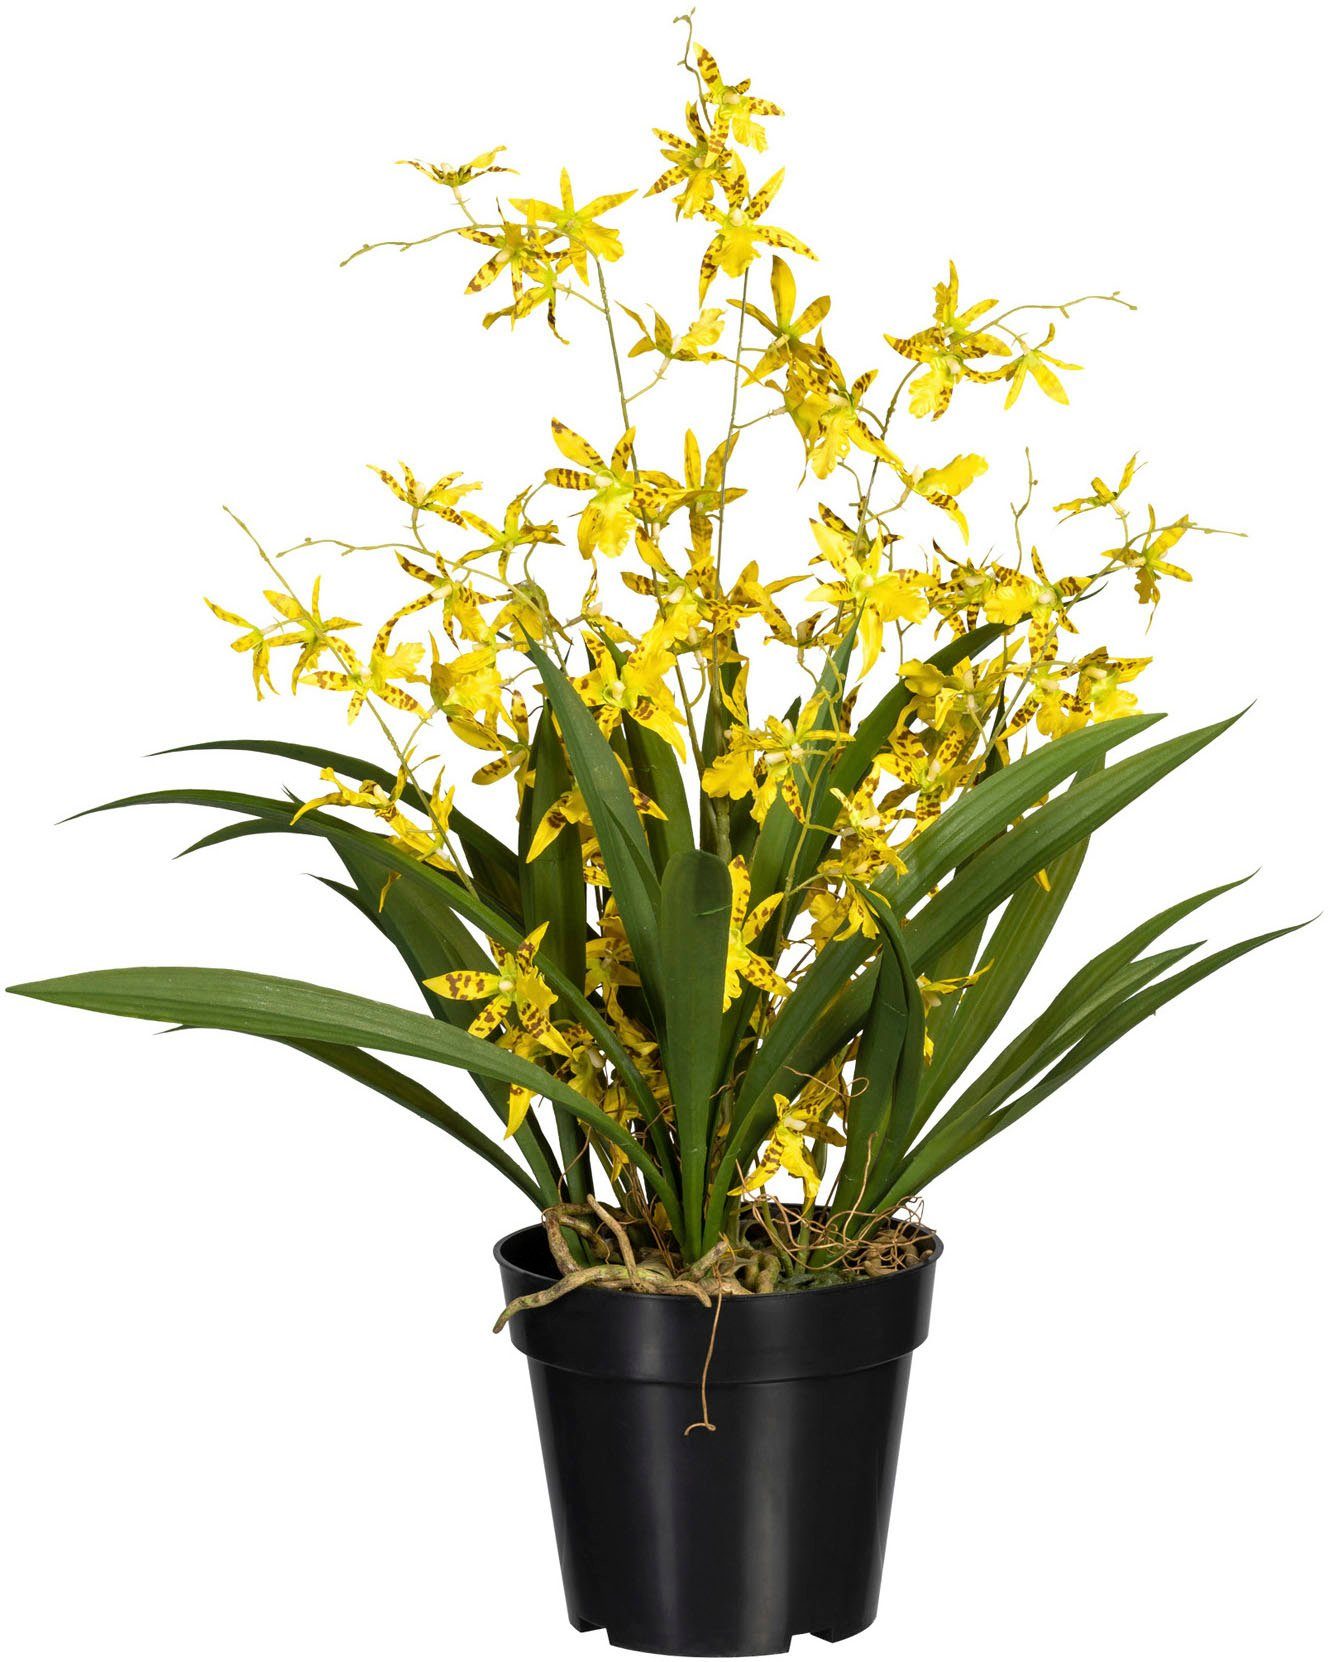 Kunstorchidee Oncidie Dancing Queen Orchidee Oncidie, Creativ green, Höhe 60 cm gelb